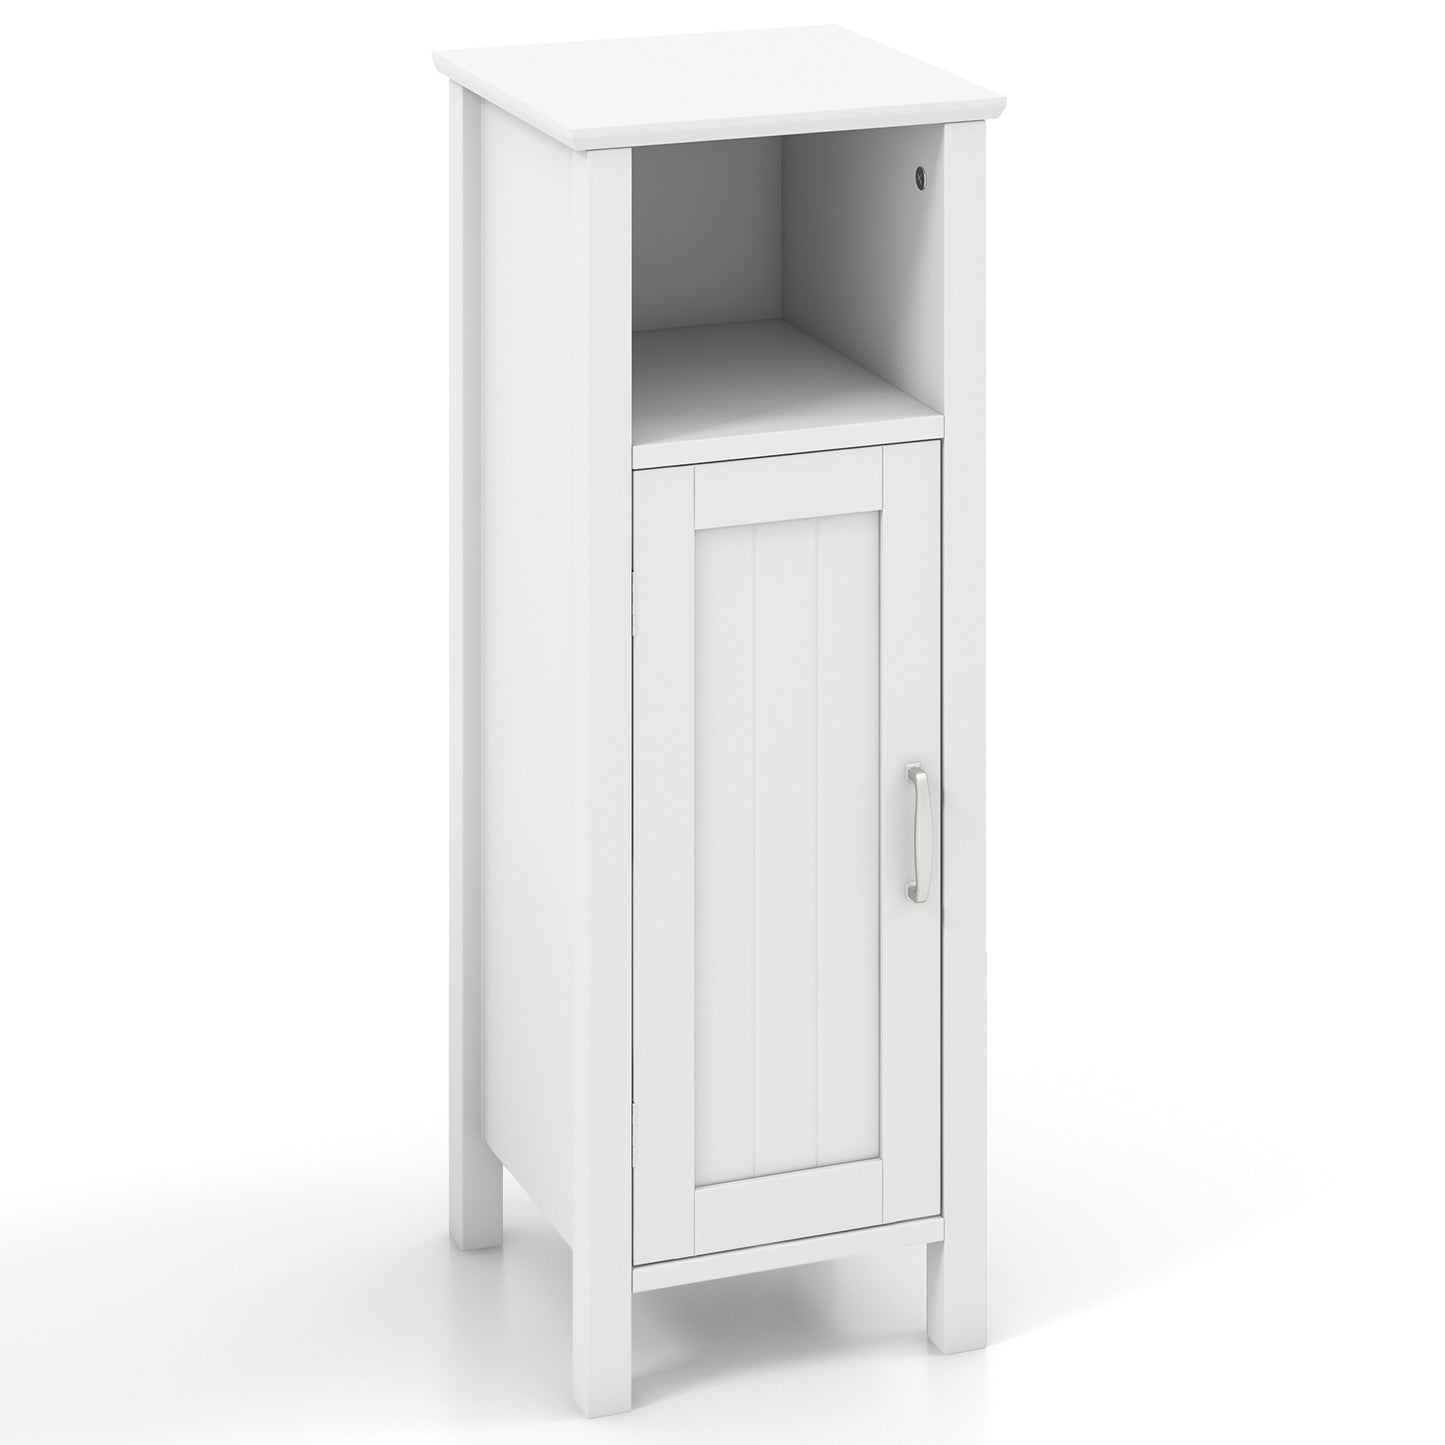 1-Door Freestanding Bathroom Cabinet with Open Shelf